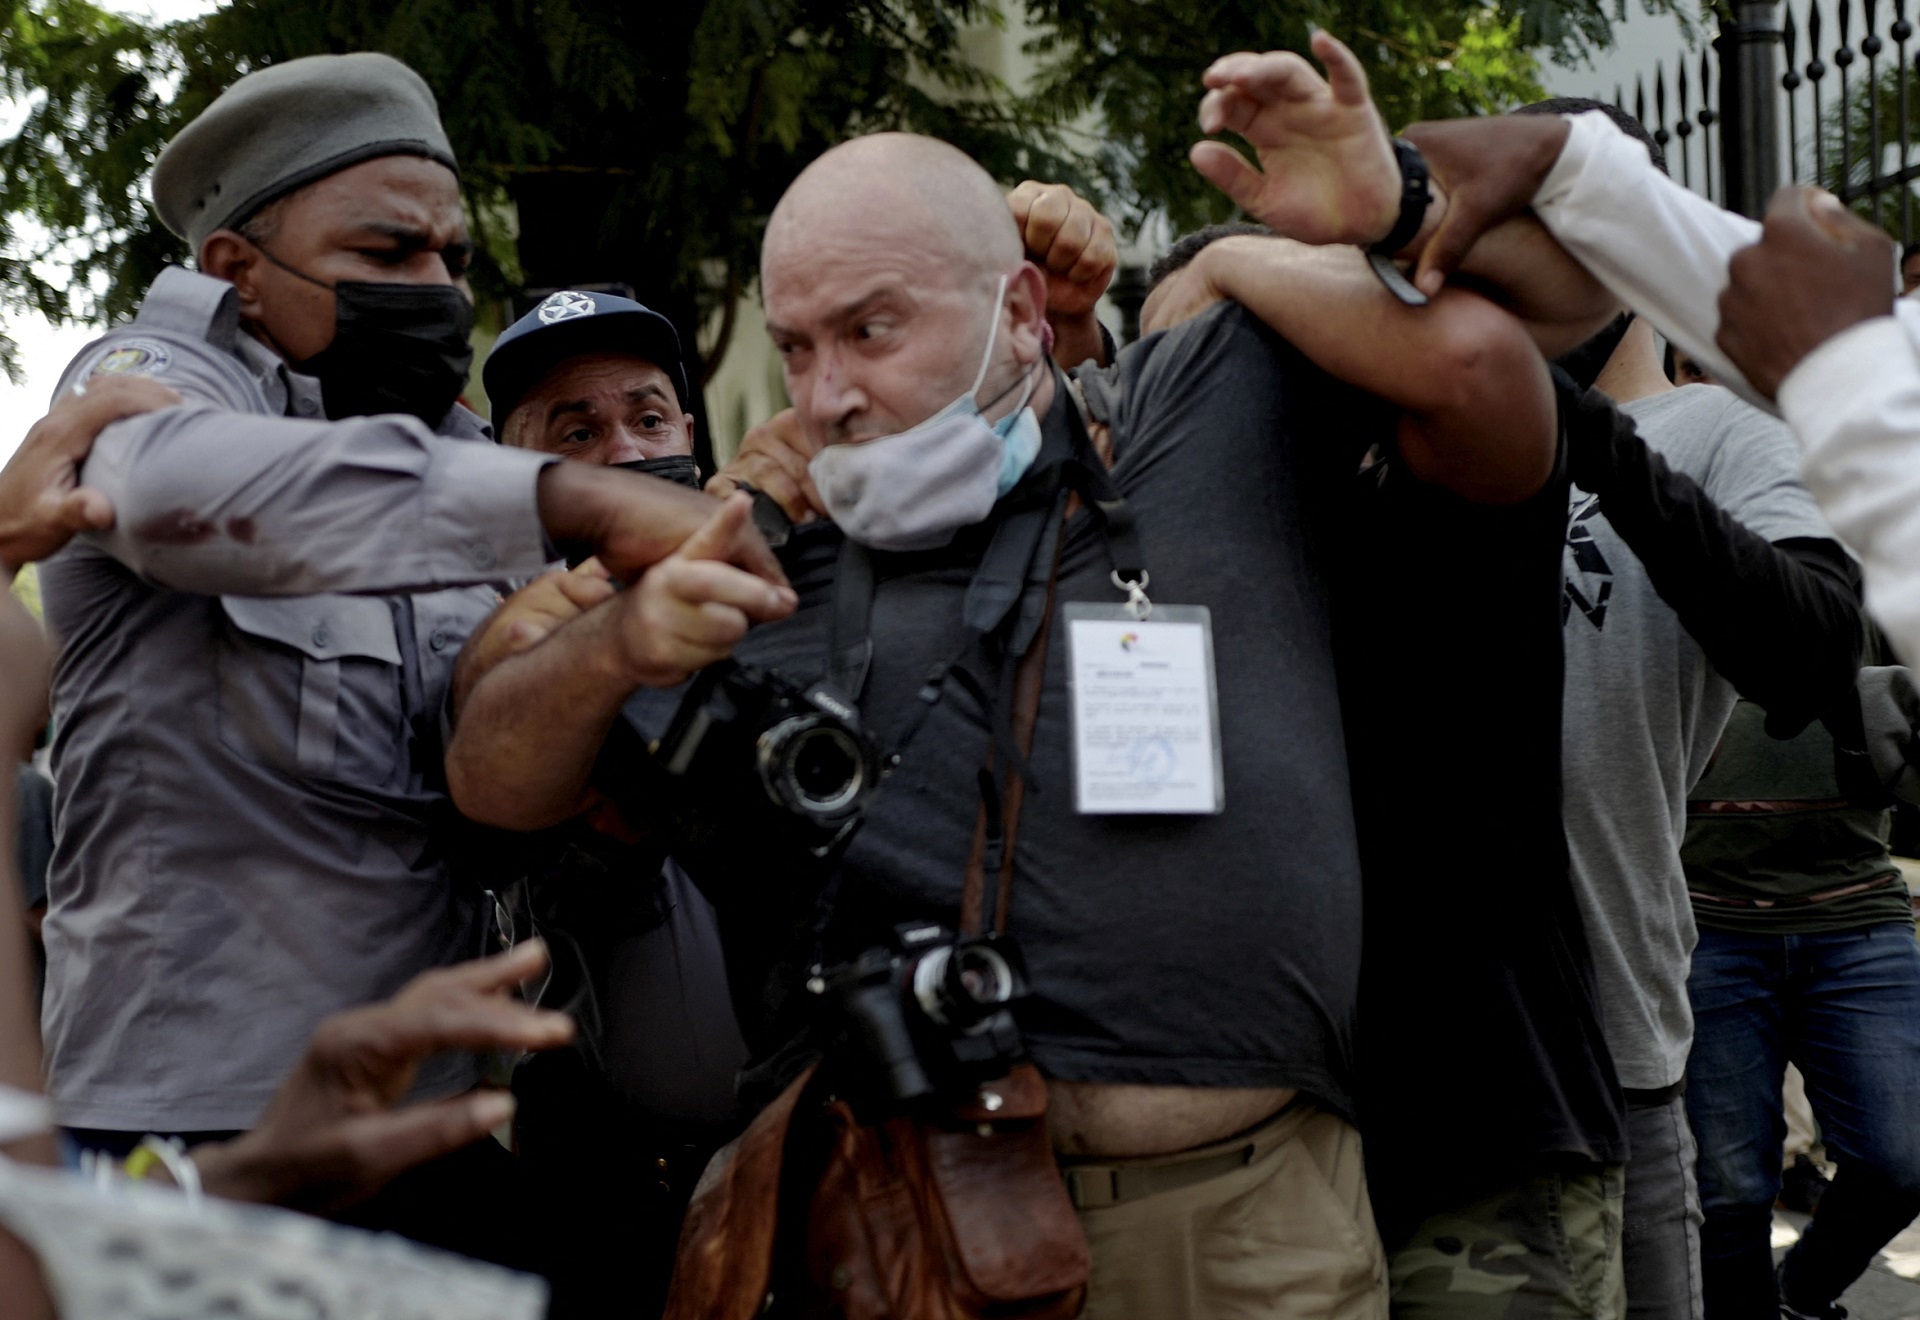 El fotógrafo de AP, el español Ramón Espinosa, es agredido por la policía mientras cubre una manifestación contra el presidente cubano Miguel Díaz-Canel en La Habana, el 11 de julio de 2021. " (Foto de Adalberto ROQUE / AFP)